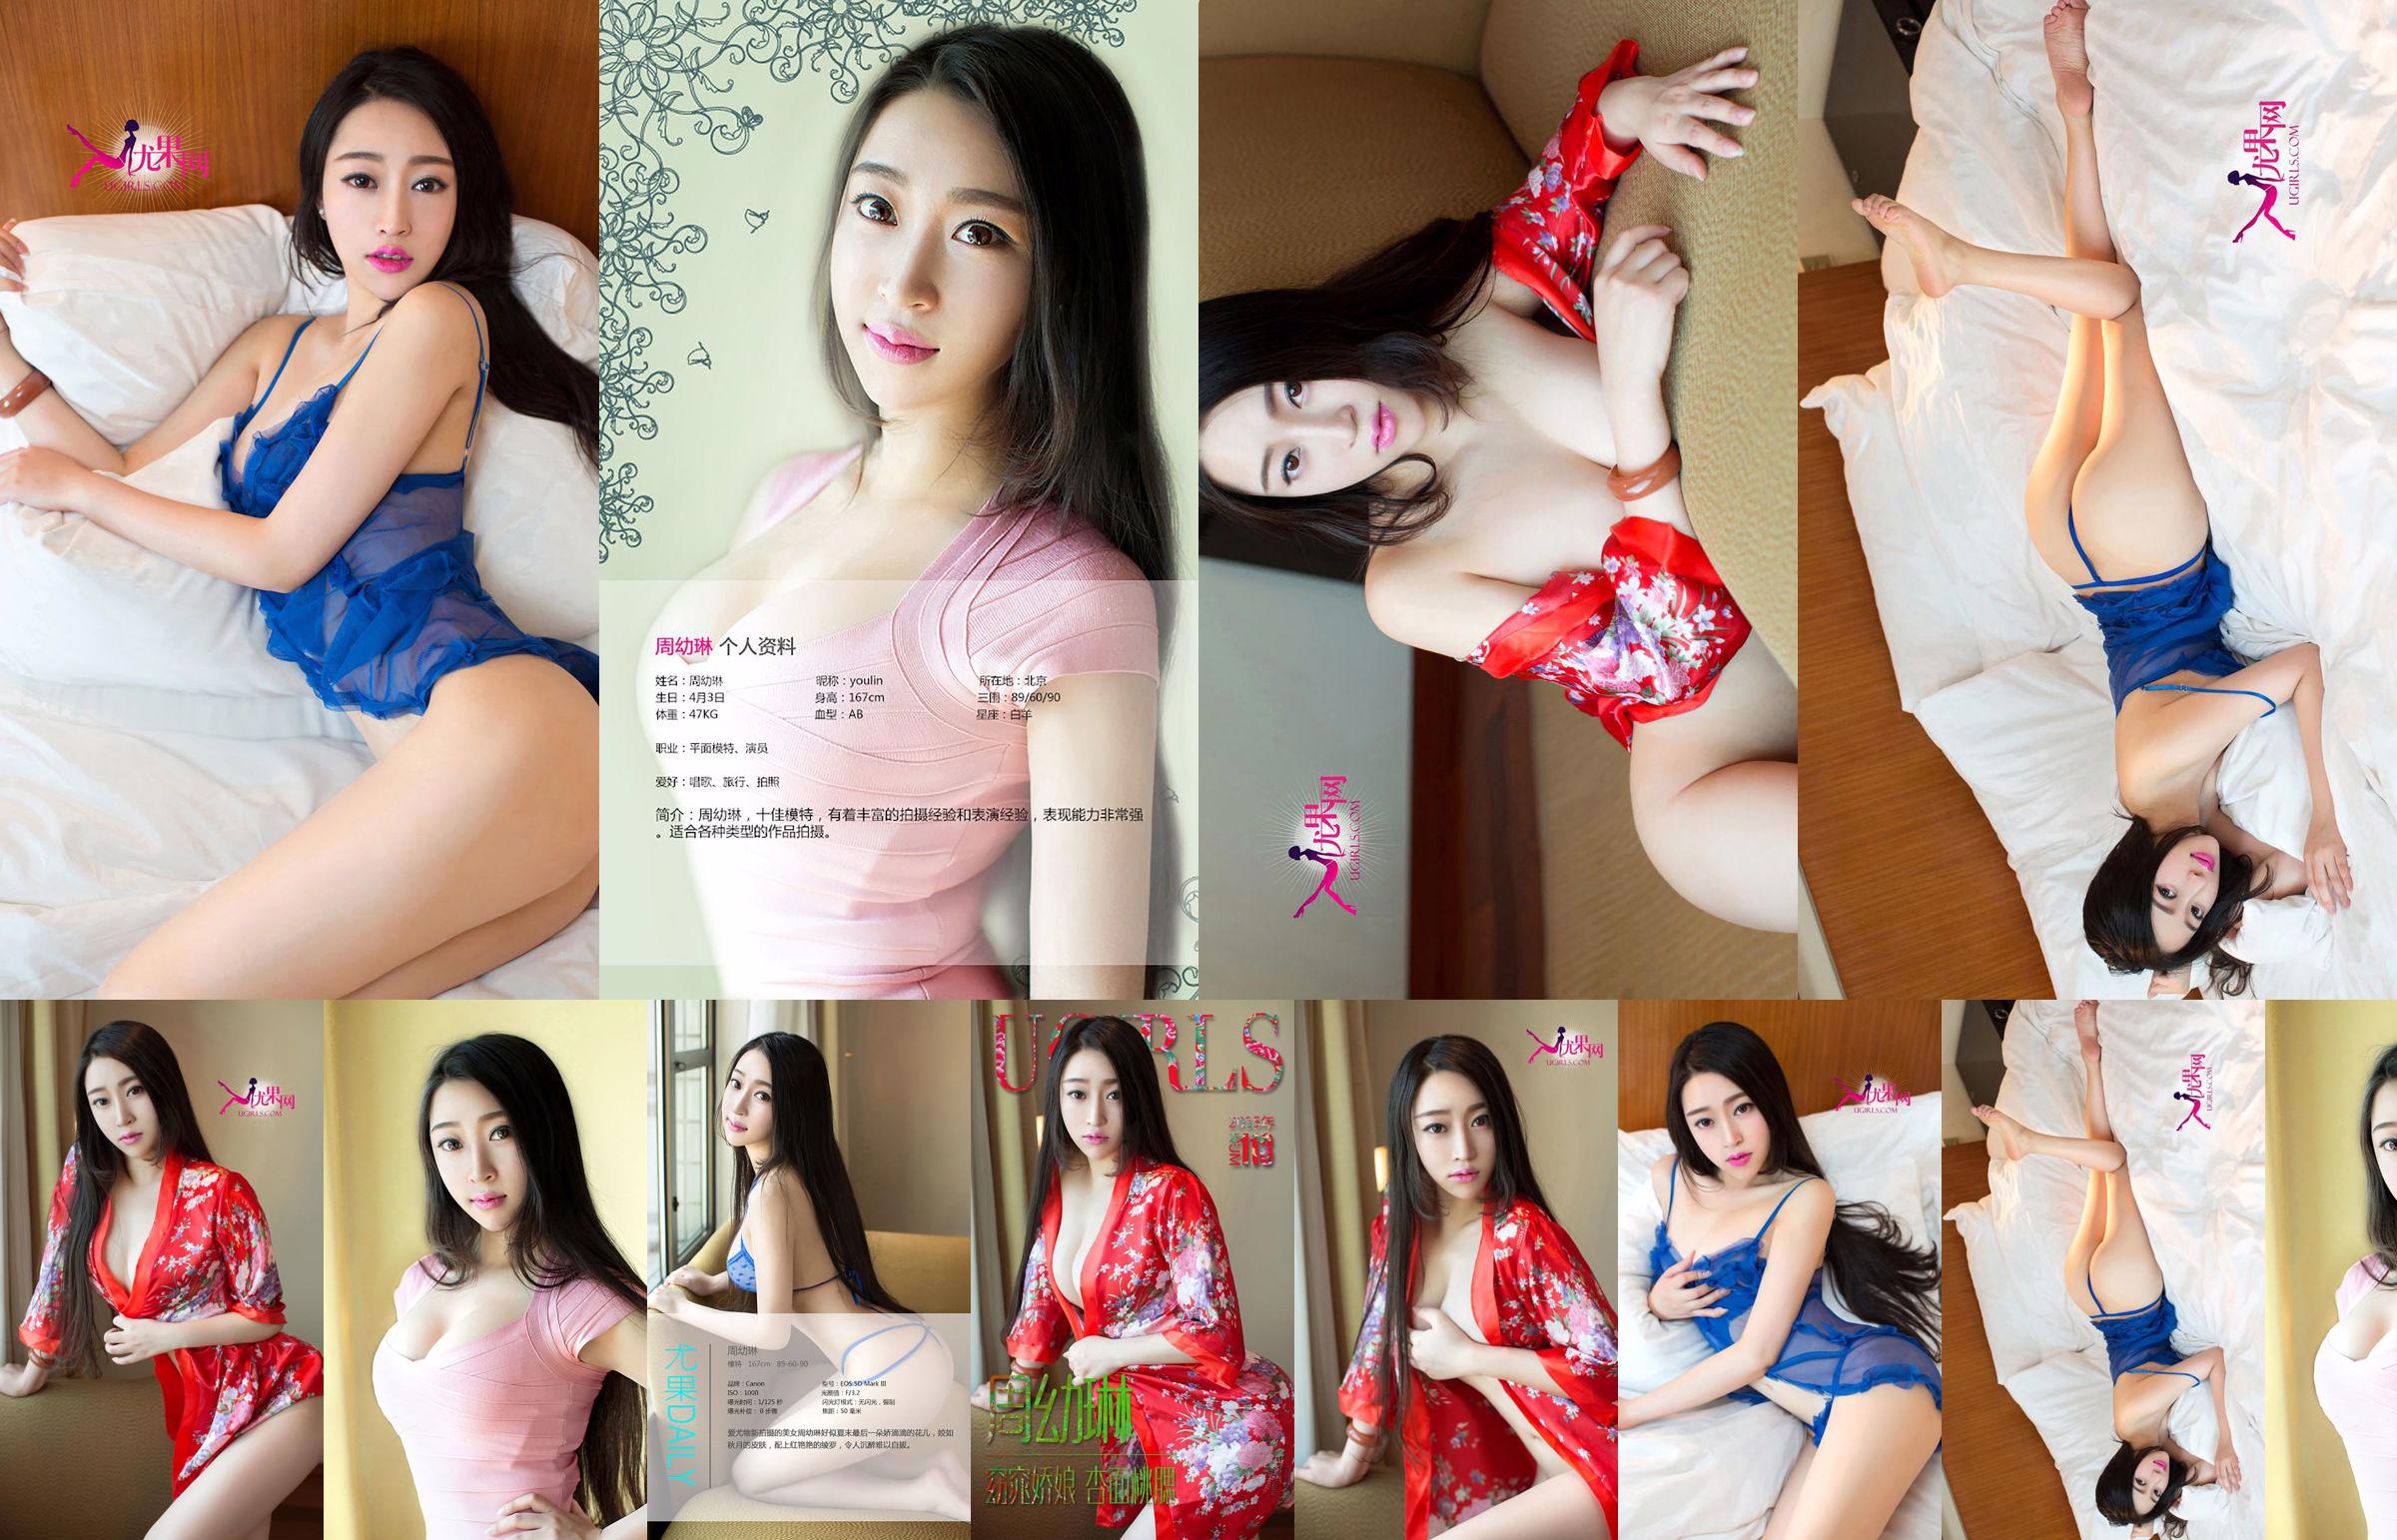 Zhou Youlin "Một cô gái xinh đẹp với khuôn mặt hoa mai và đôi má đào" [Love Youwu Ugirls] No.113 No.6562ac Trang 1